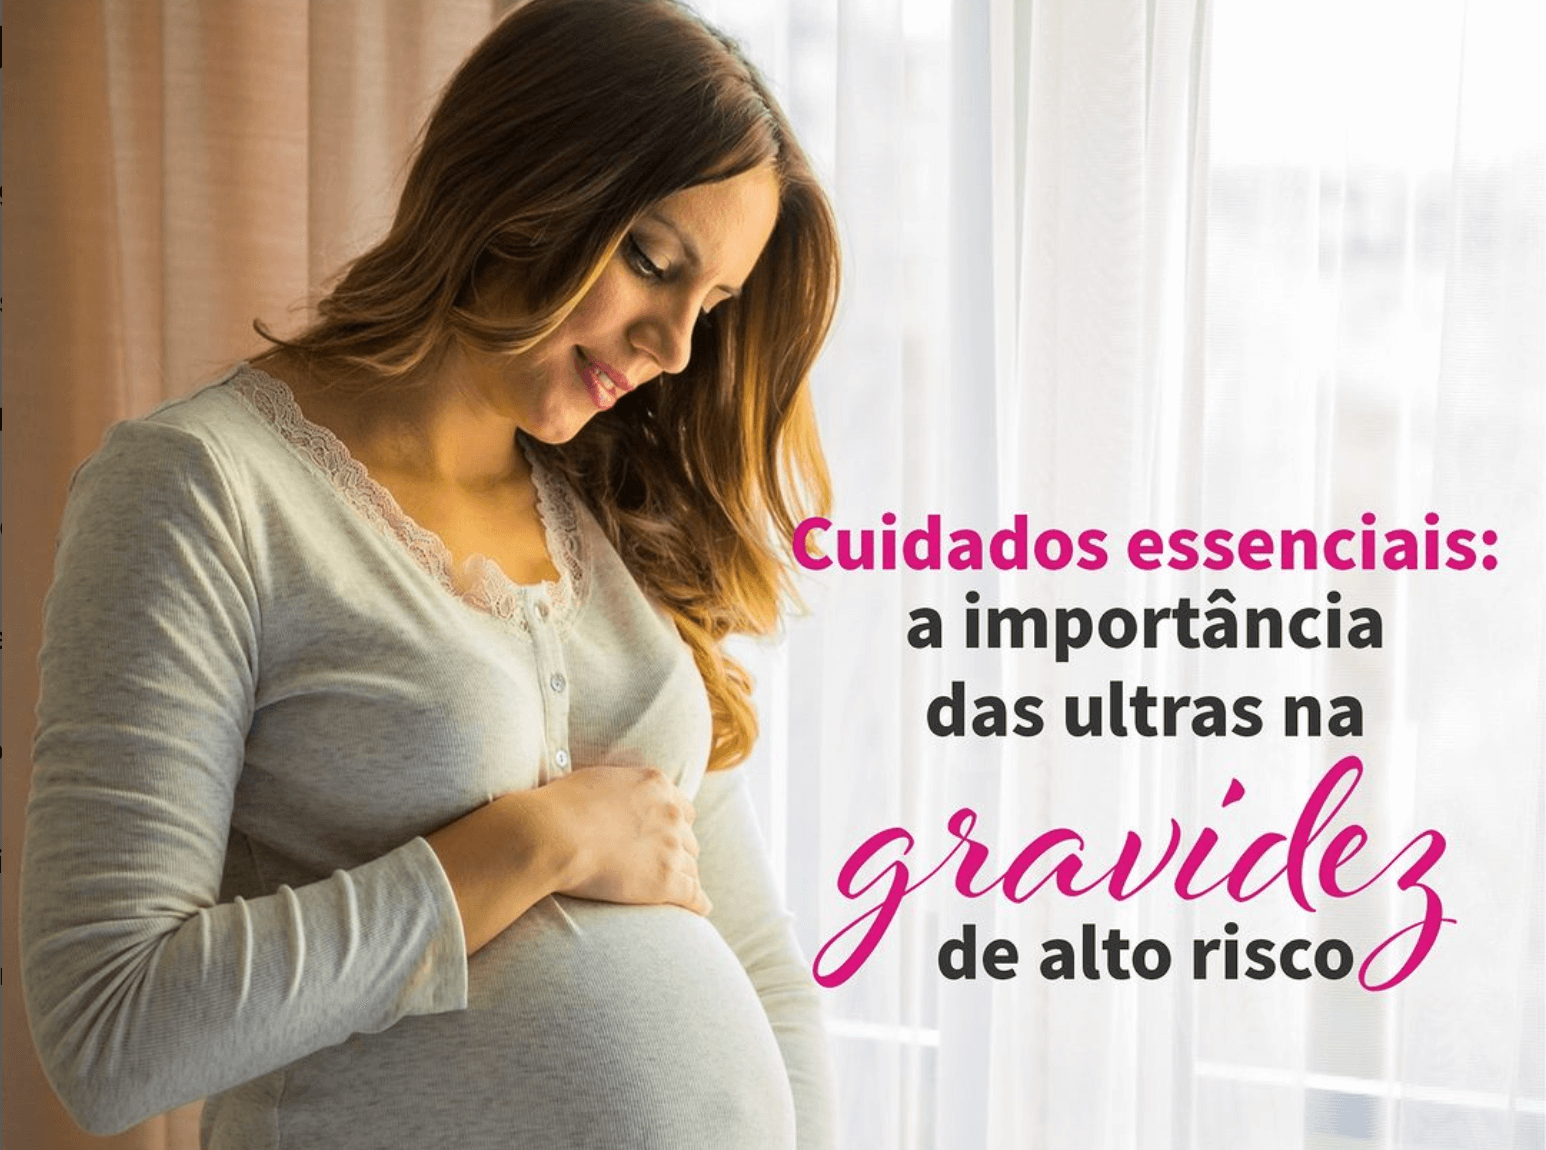 Cuidados essenciais: A importância das ultras na gravidez de alto risco